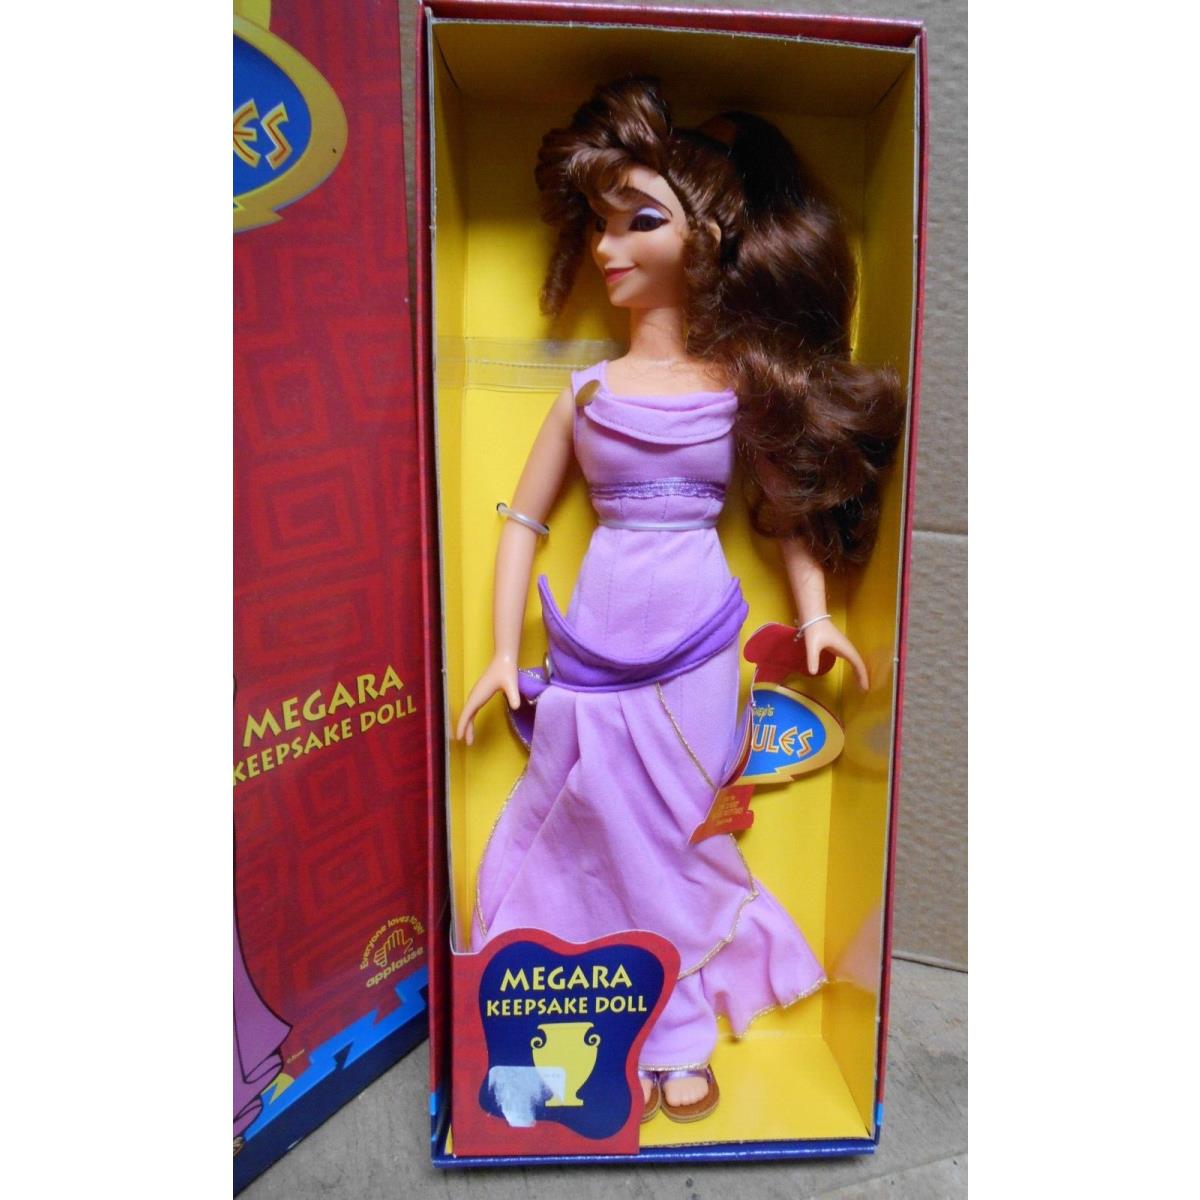 Vintage Megara Keepsake Doll From Disney Hercules by Applause 15